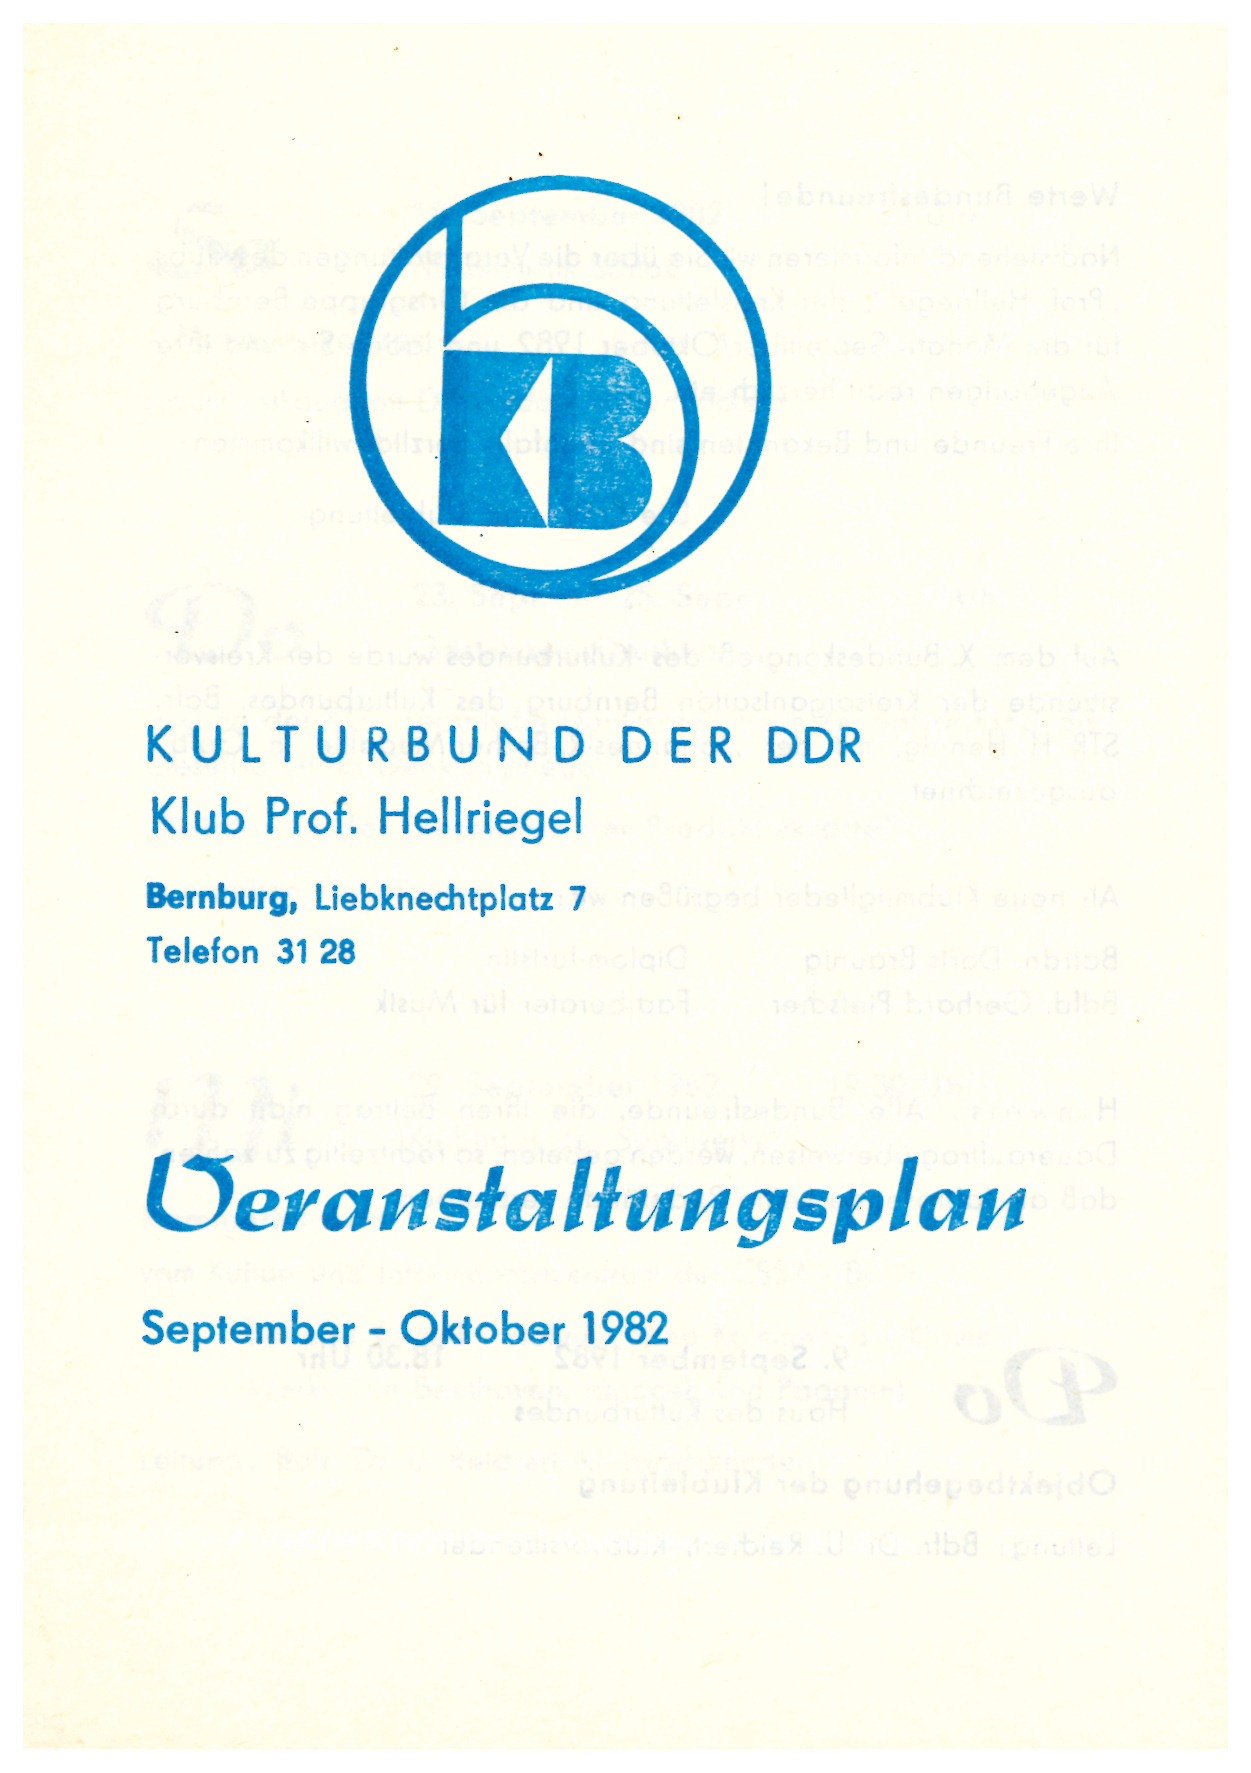 Veranstaltungsplan Kulturbund der DDR - Klub Prof. Hellriegel (Historische Mühle von Sanssouci CC BY-NC-SA)